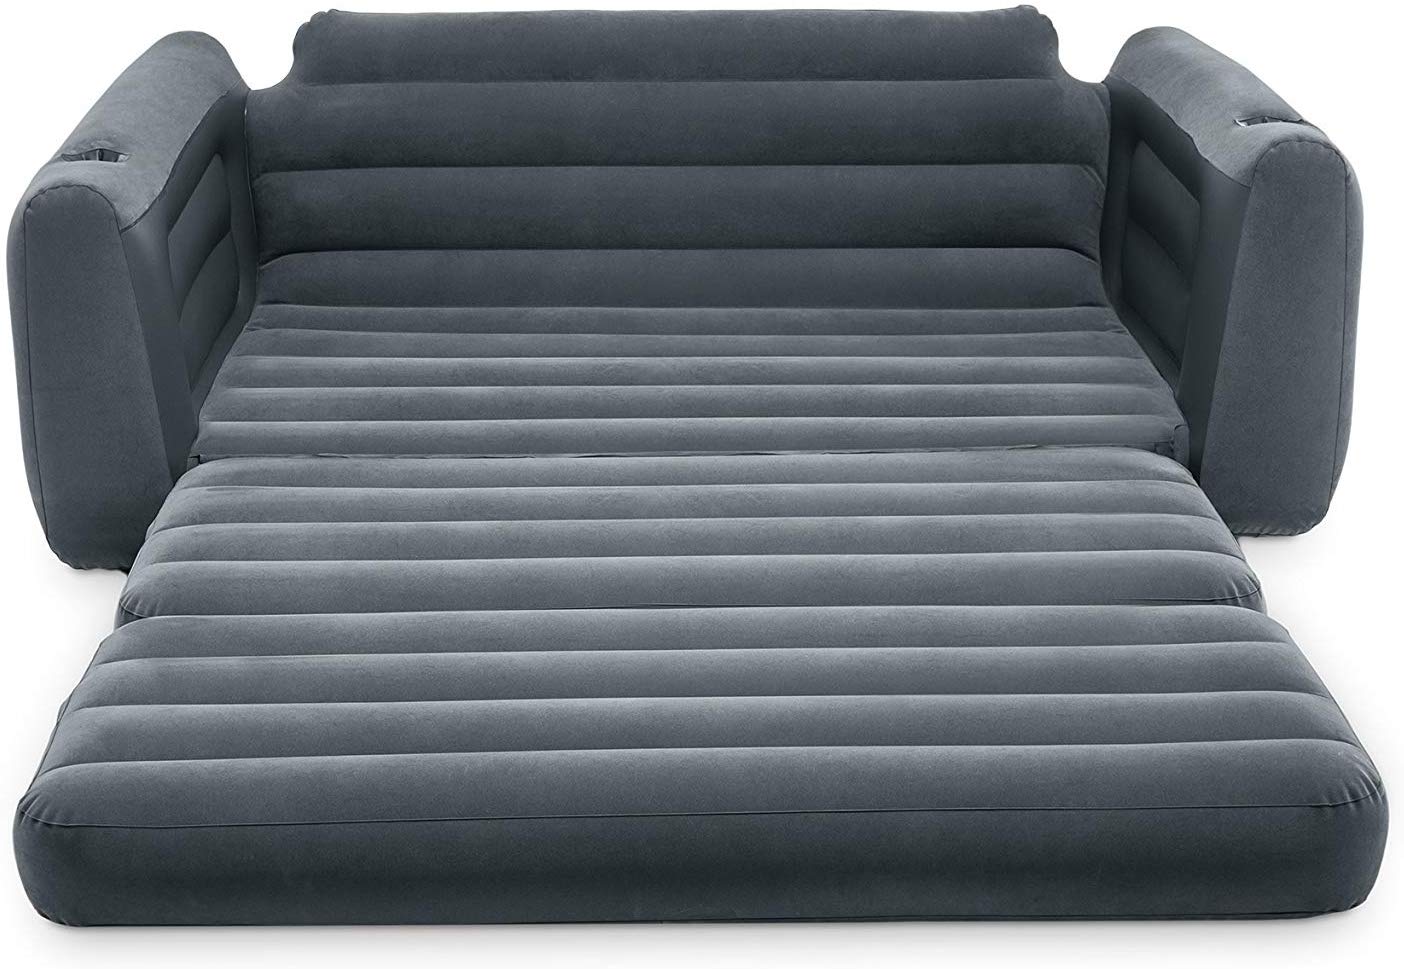 Надувной диван Intex 66552 – PandaShop.md. Купить надувной диван Intex .